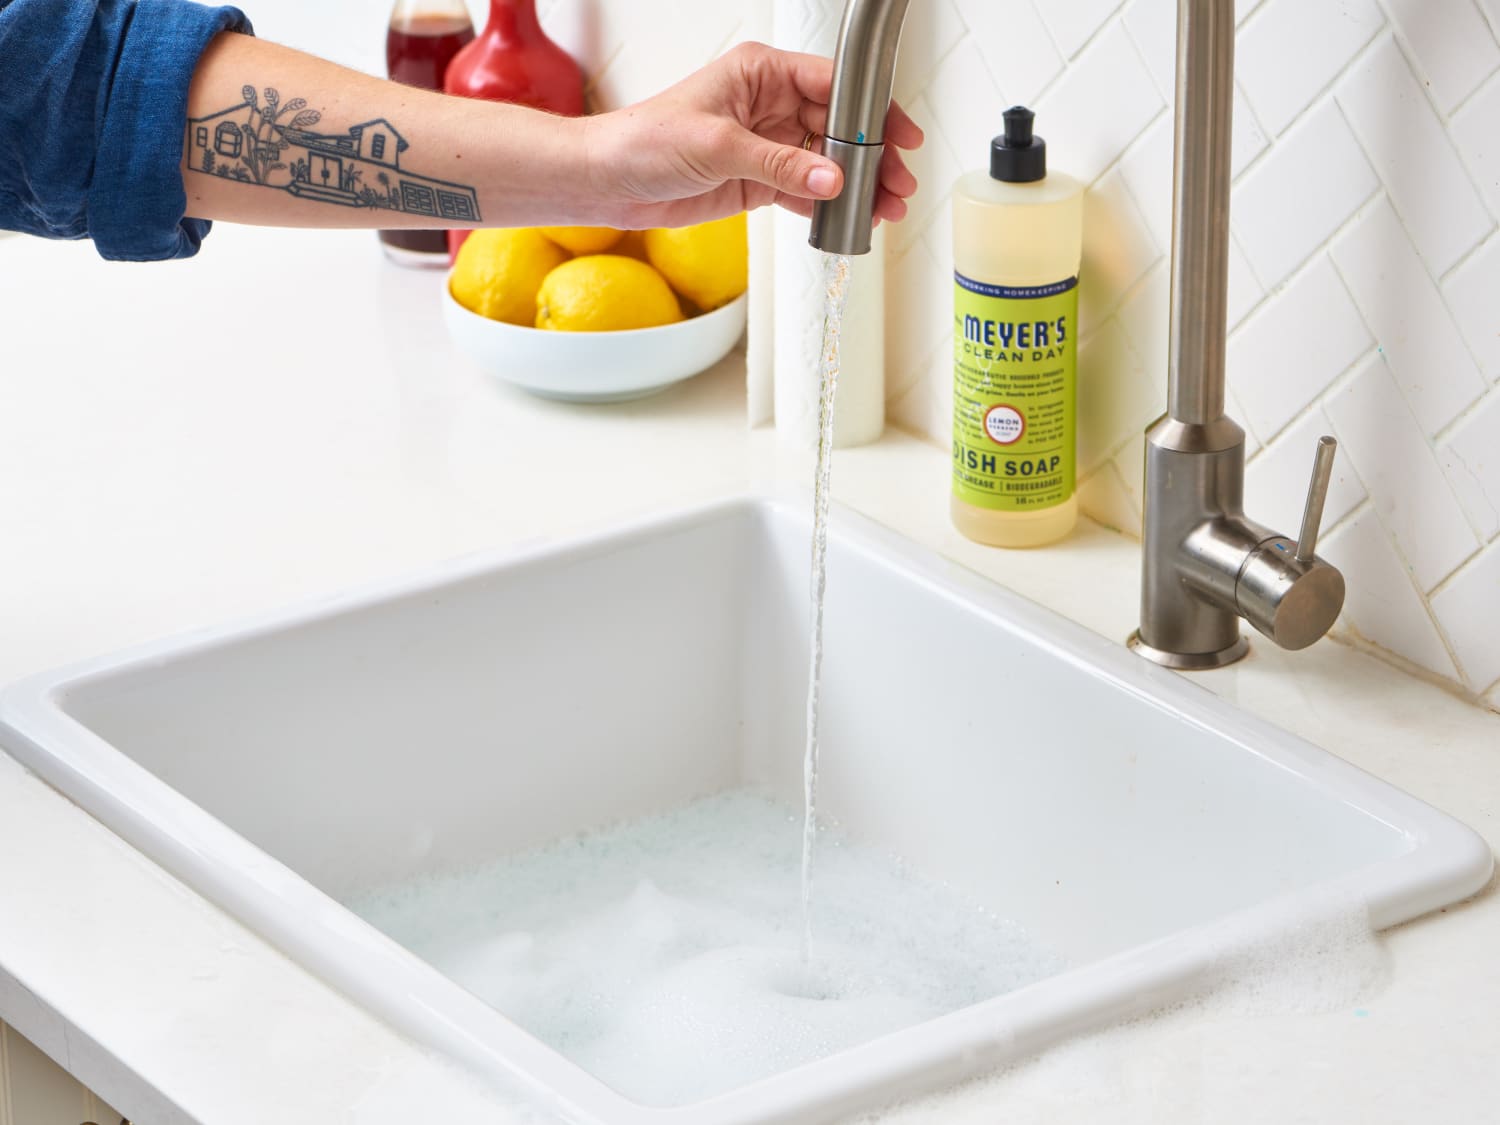 71 cm Flexible Sink Überlauf Drain Unblocker Reinigen Pinsel Küche Werkzeug Neu 